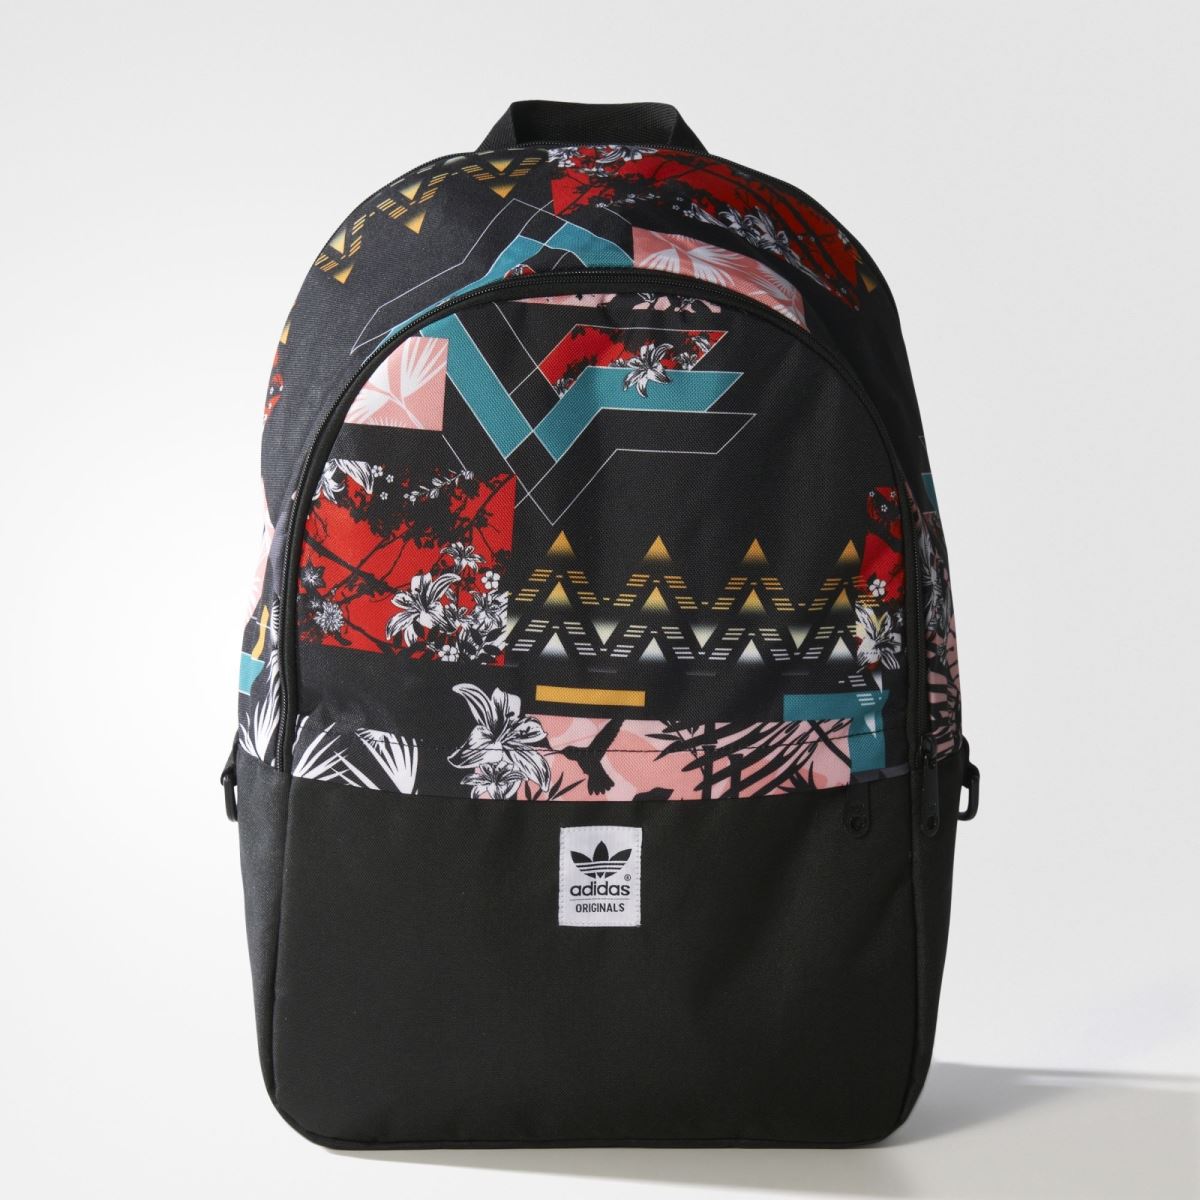 Balo cao cấp Adidas Essential Soccer backpack hàng xuất khẩu